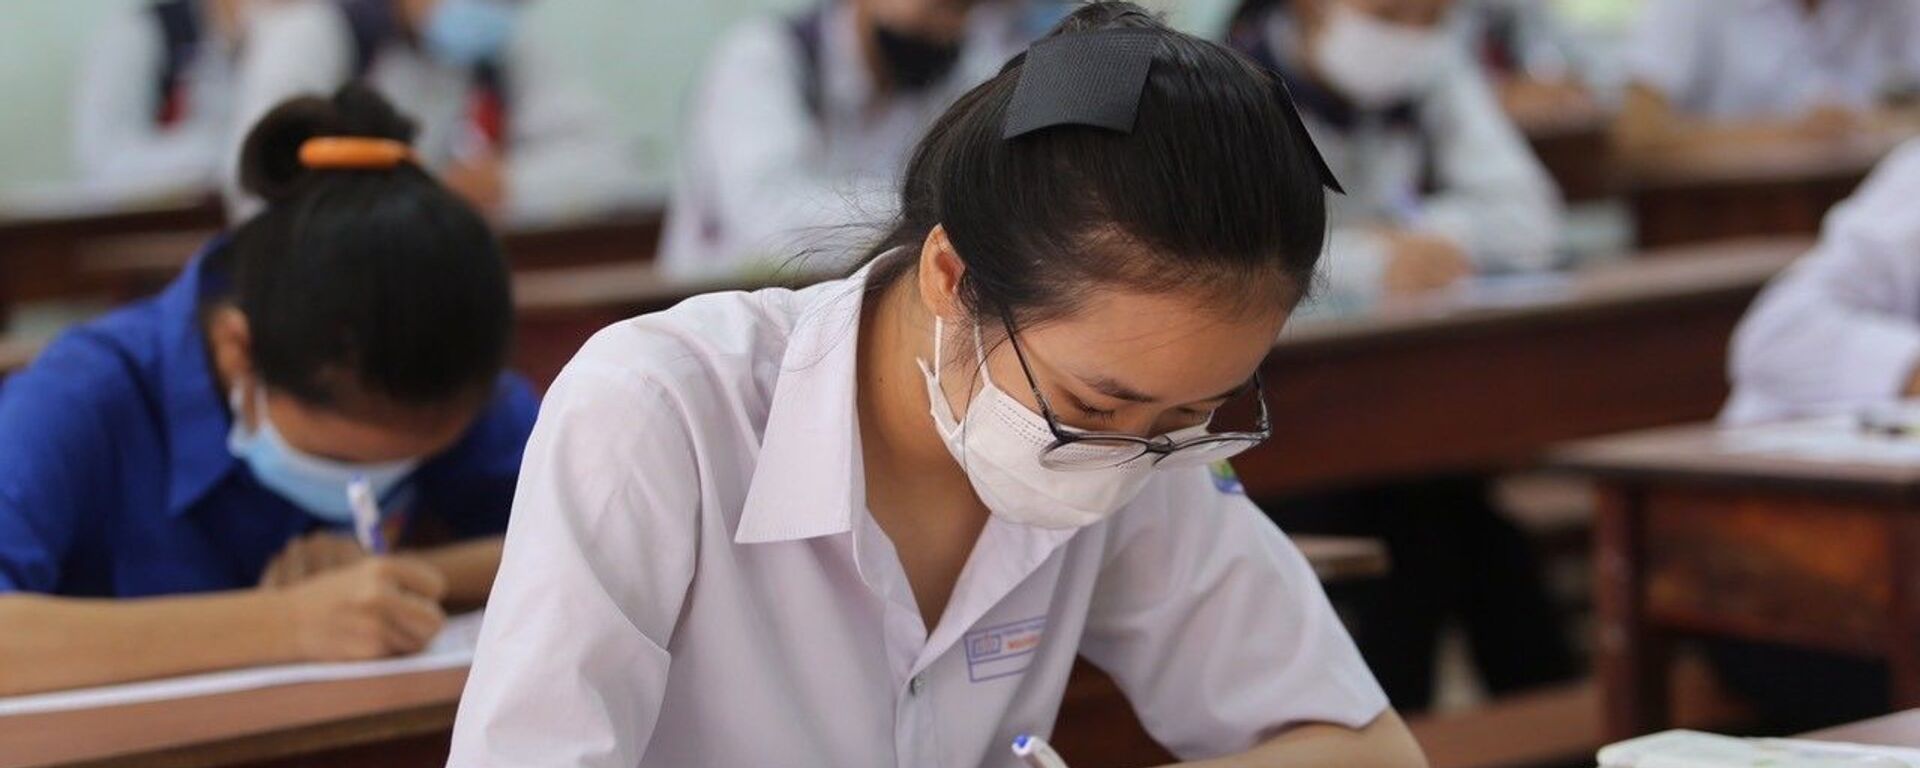 Kỳ thi Tốt nghiệp THPT năm 2021 tại Gia Lai kết thúc an toàn, nghiêm túc, đúng quy chế. - Sputnik Việt Nam, 1920, 14.07.2021